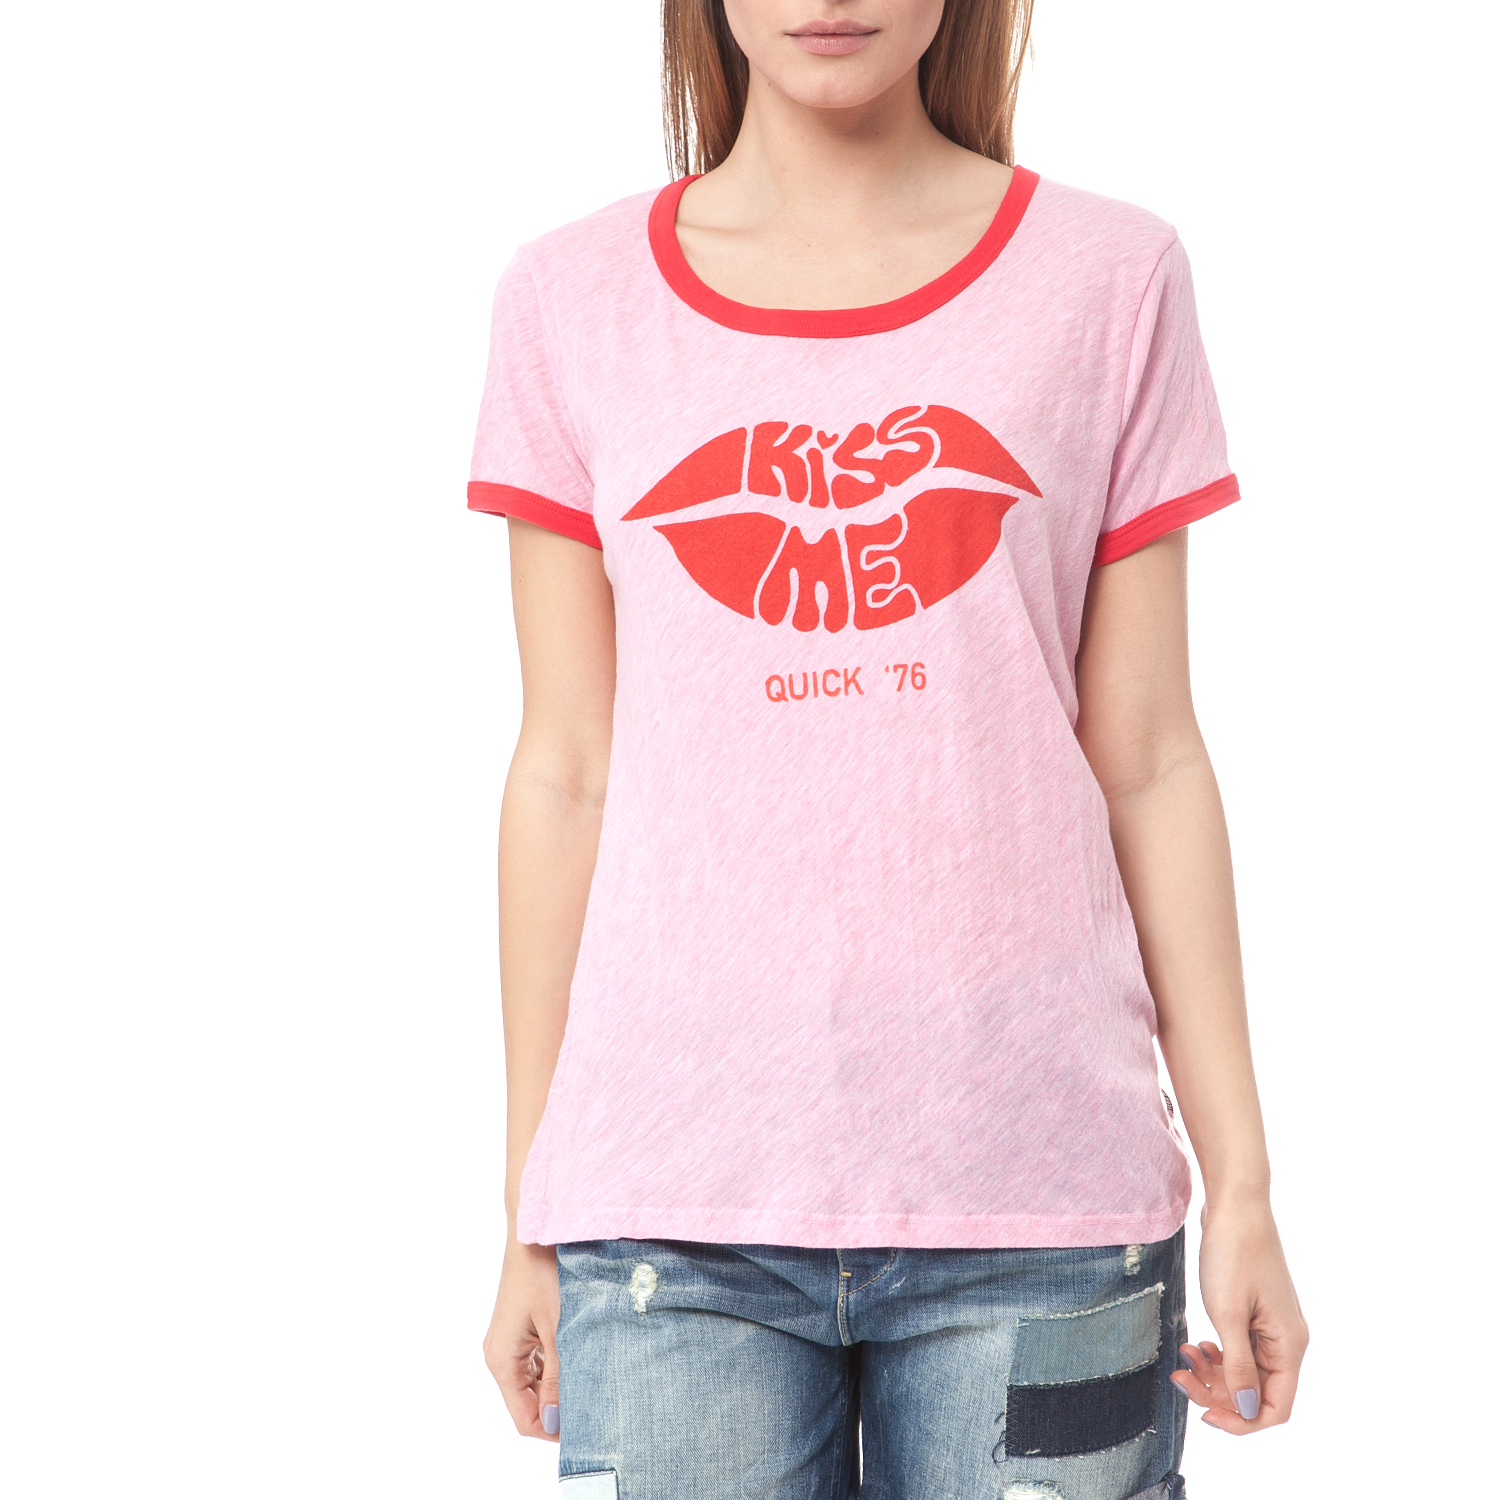 Γυναικεία/Ρούχα/Μπλούζες/Κοντομάνικες SCOTCH & SODA - Γυναικείο T-Shirt Maison Scotch ροζ